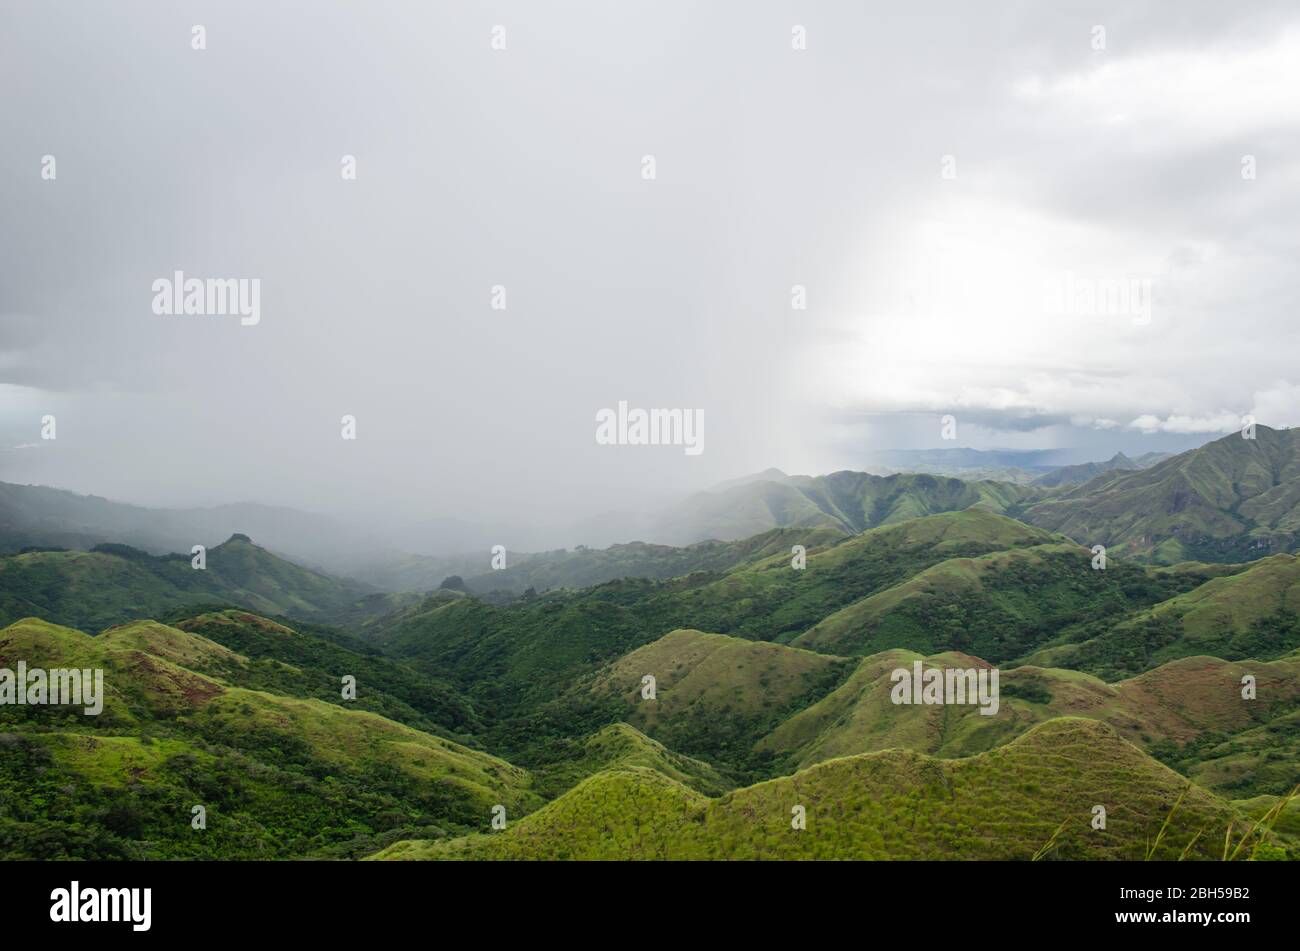 Affascinante paesaggio montano nel centro di Panama, con dense nuvole che avvolgono il cielo e piogge dolci sulle colline verdeggianti. Foto Stock